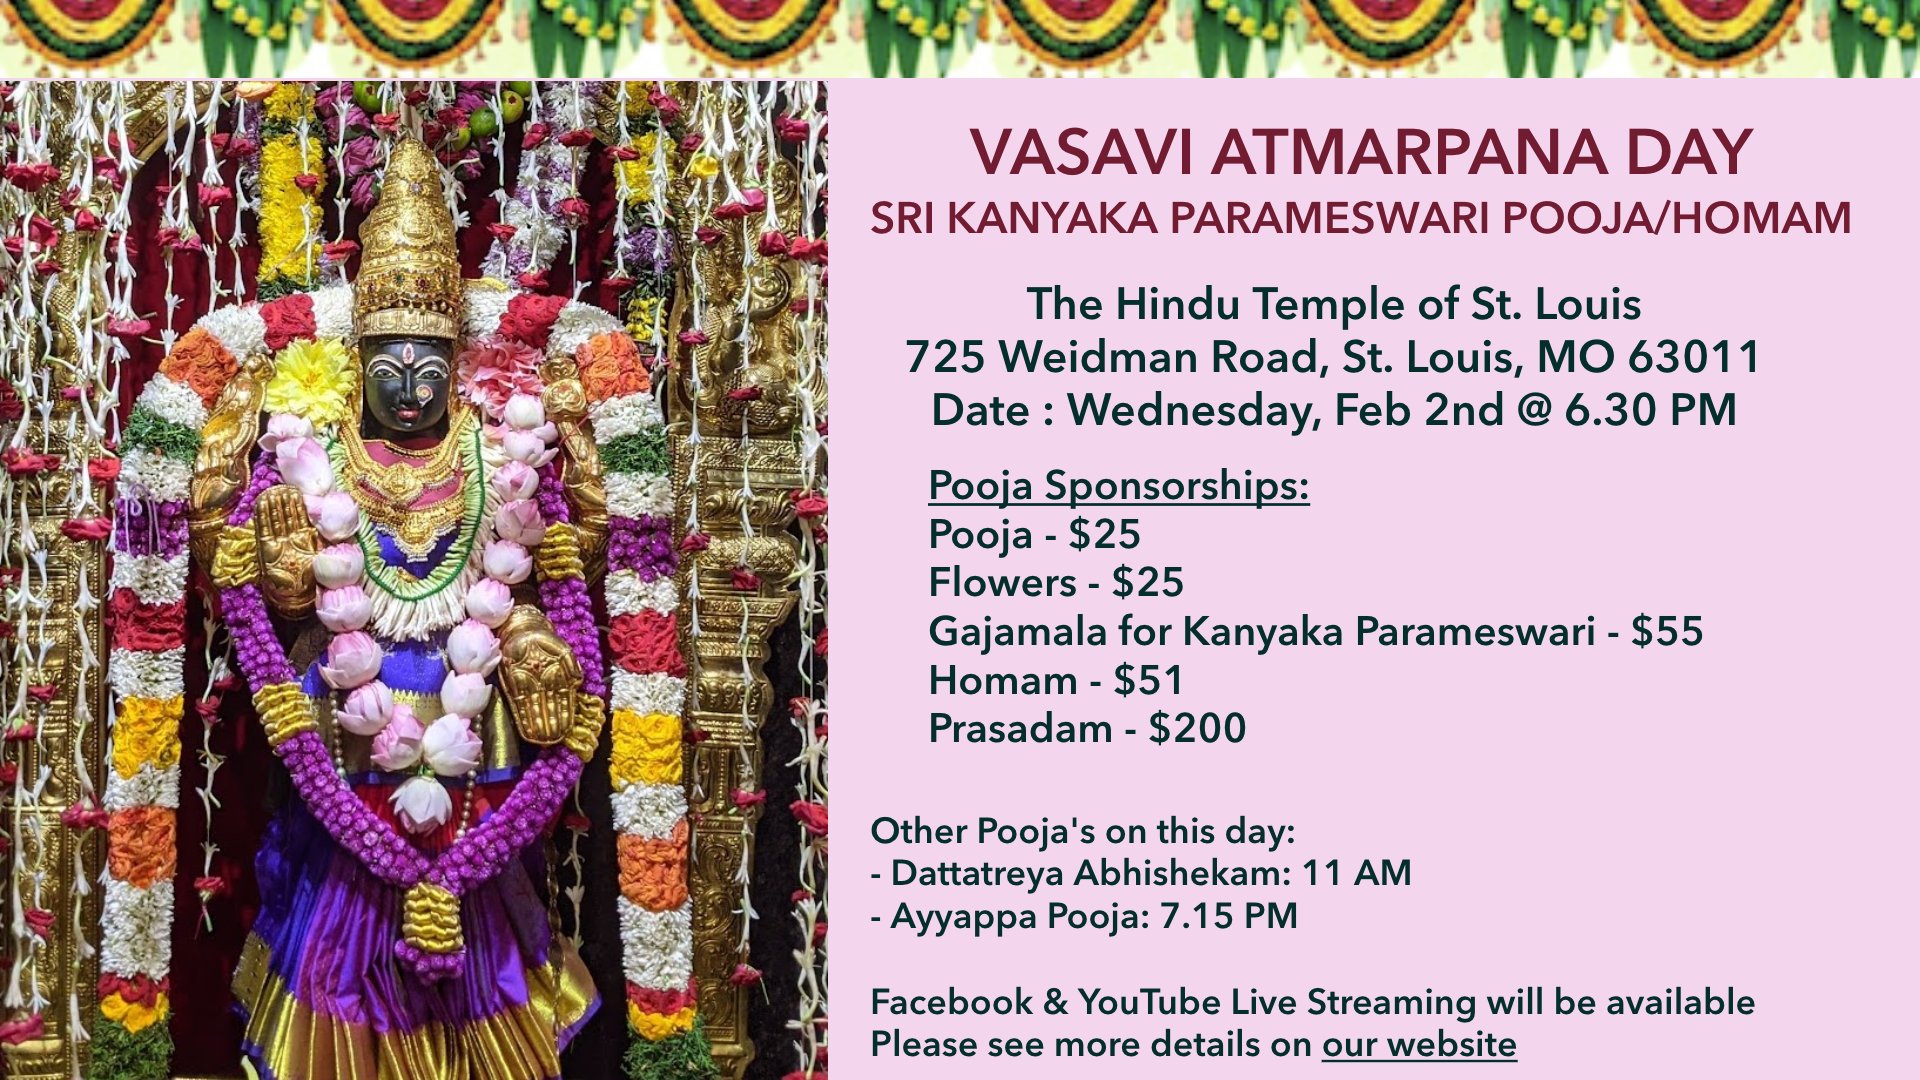 Vasavi Atmarpana Day – 02/02 @ 6.30 PM